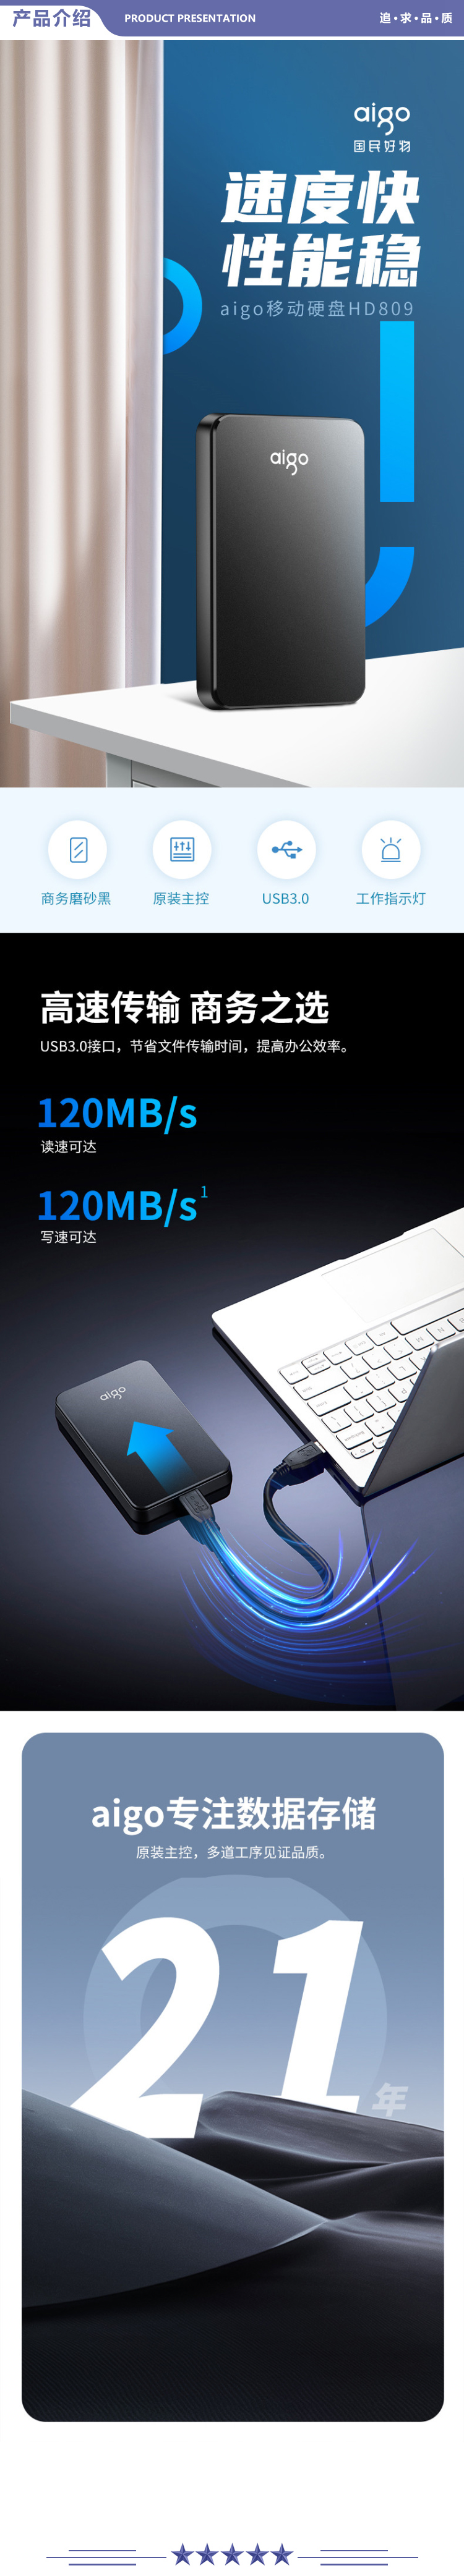 爱国者 (aigo) HD809 2TB USB3.0 移动硬盘 黑色 稳定高速传输 简约设计 睿智之美 商务便携 2.jpg